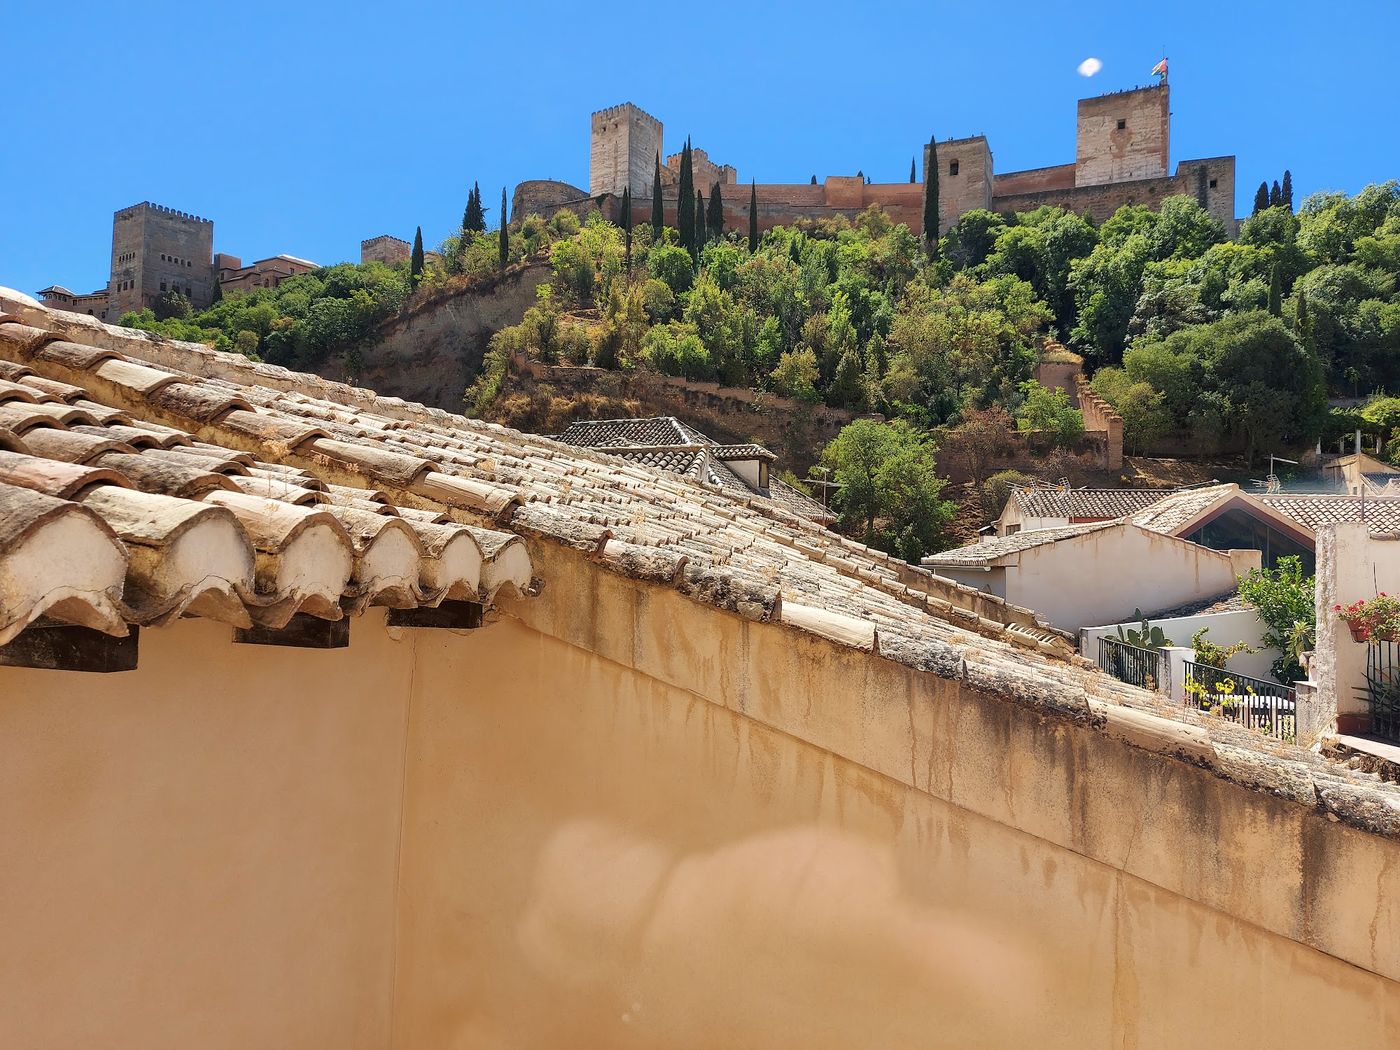 Einblick in Granadas reiche Geschichte